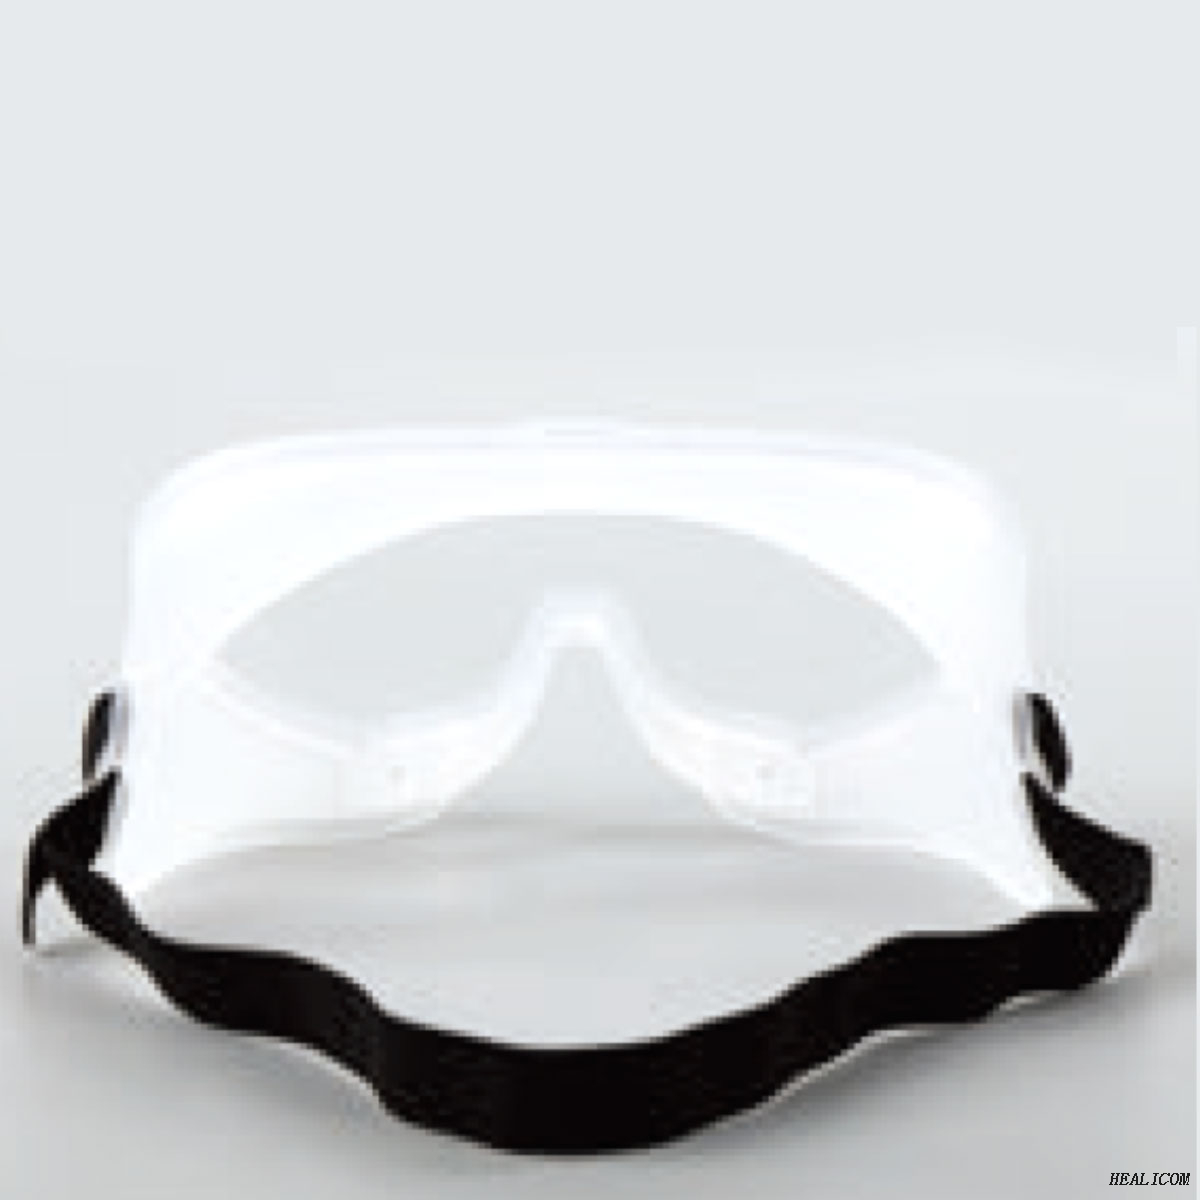 HYZ-A Occhiali protettivi monouso per la maschera per gli occhi di isolamento medico